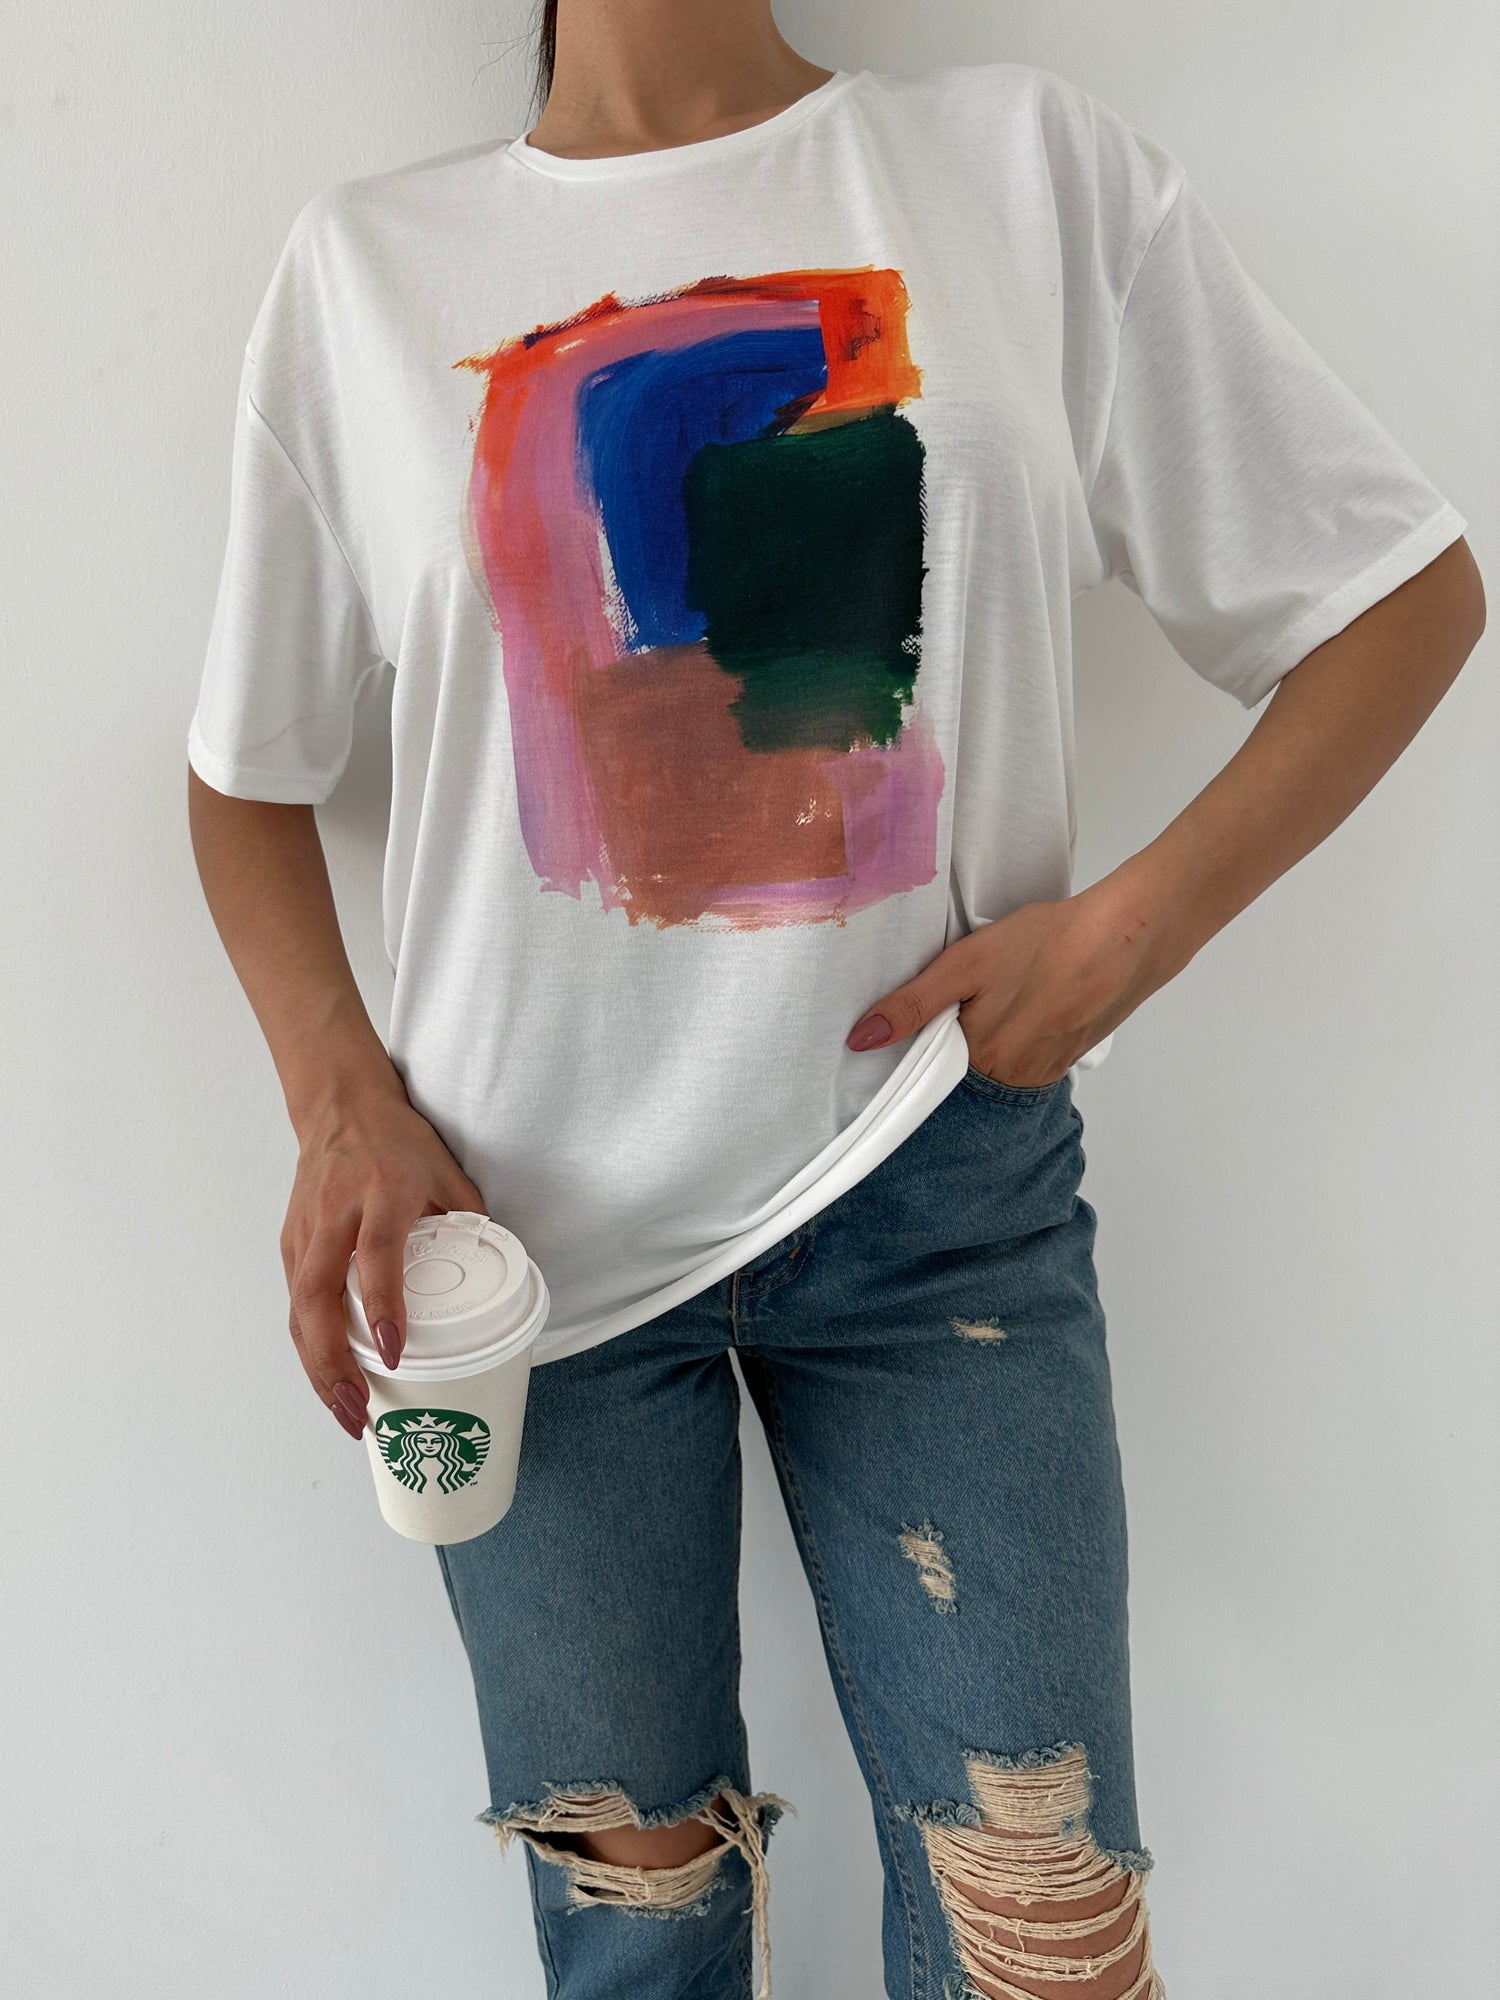 Printed T-Shirt - Abstract art